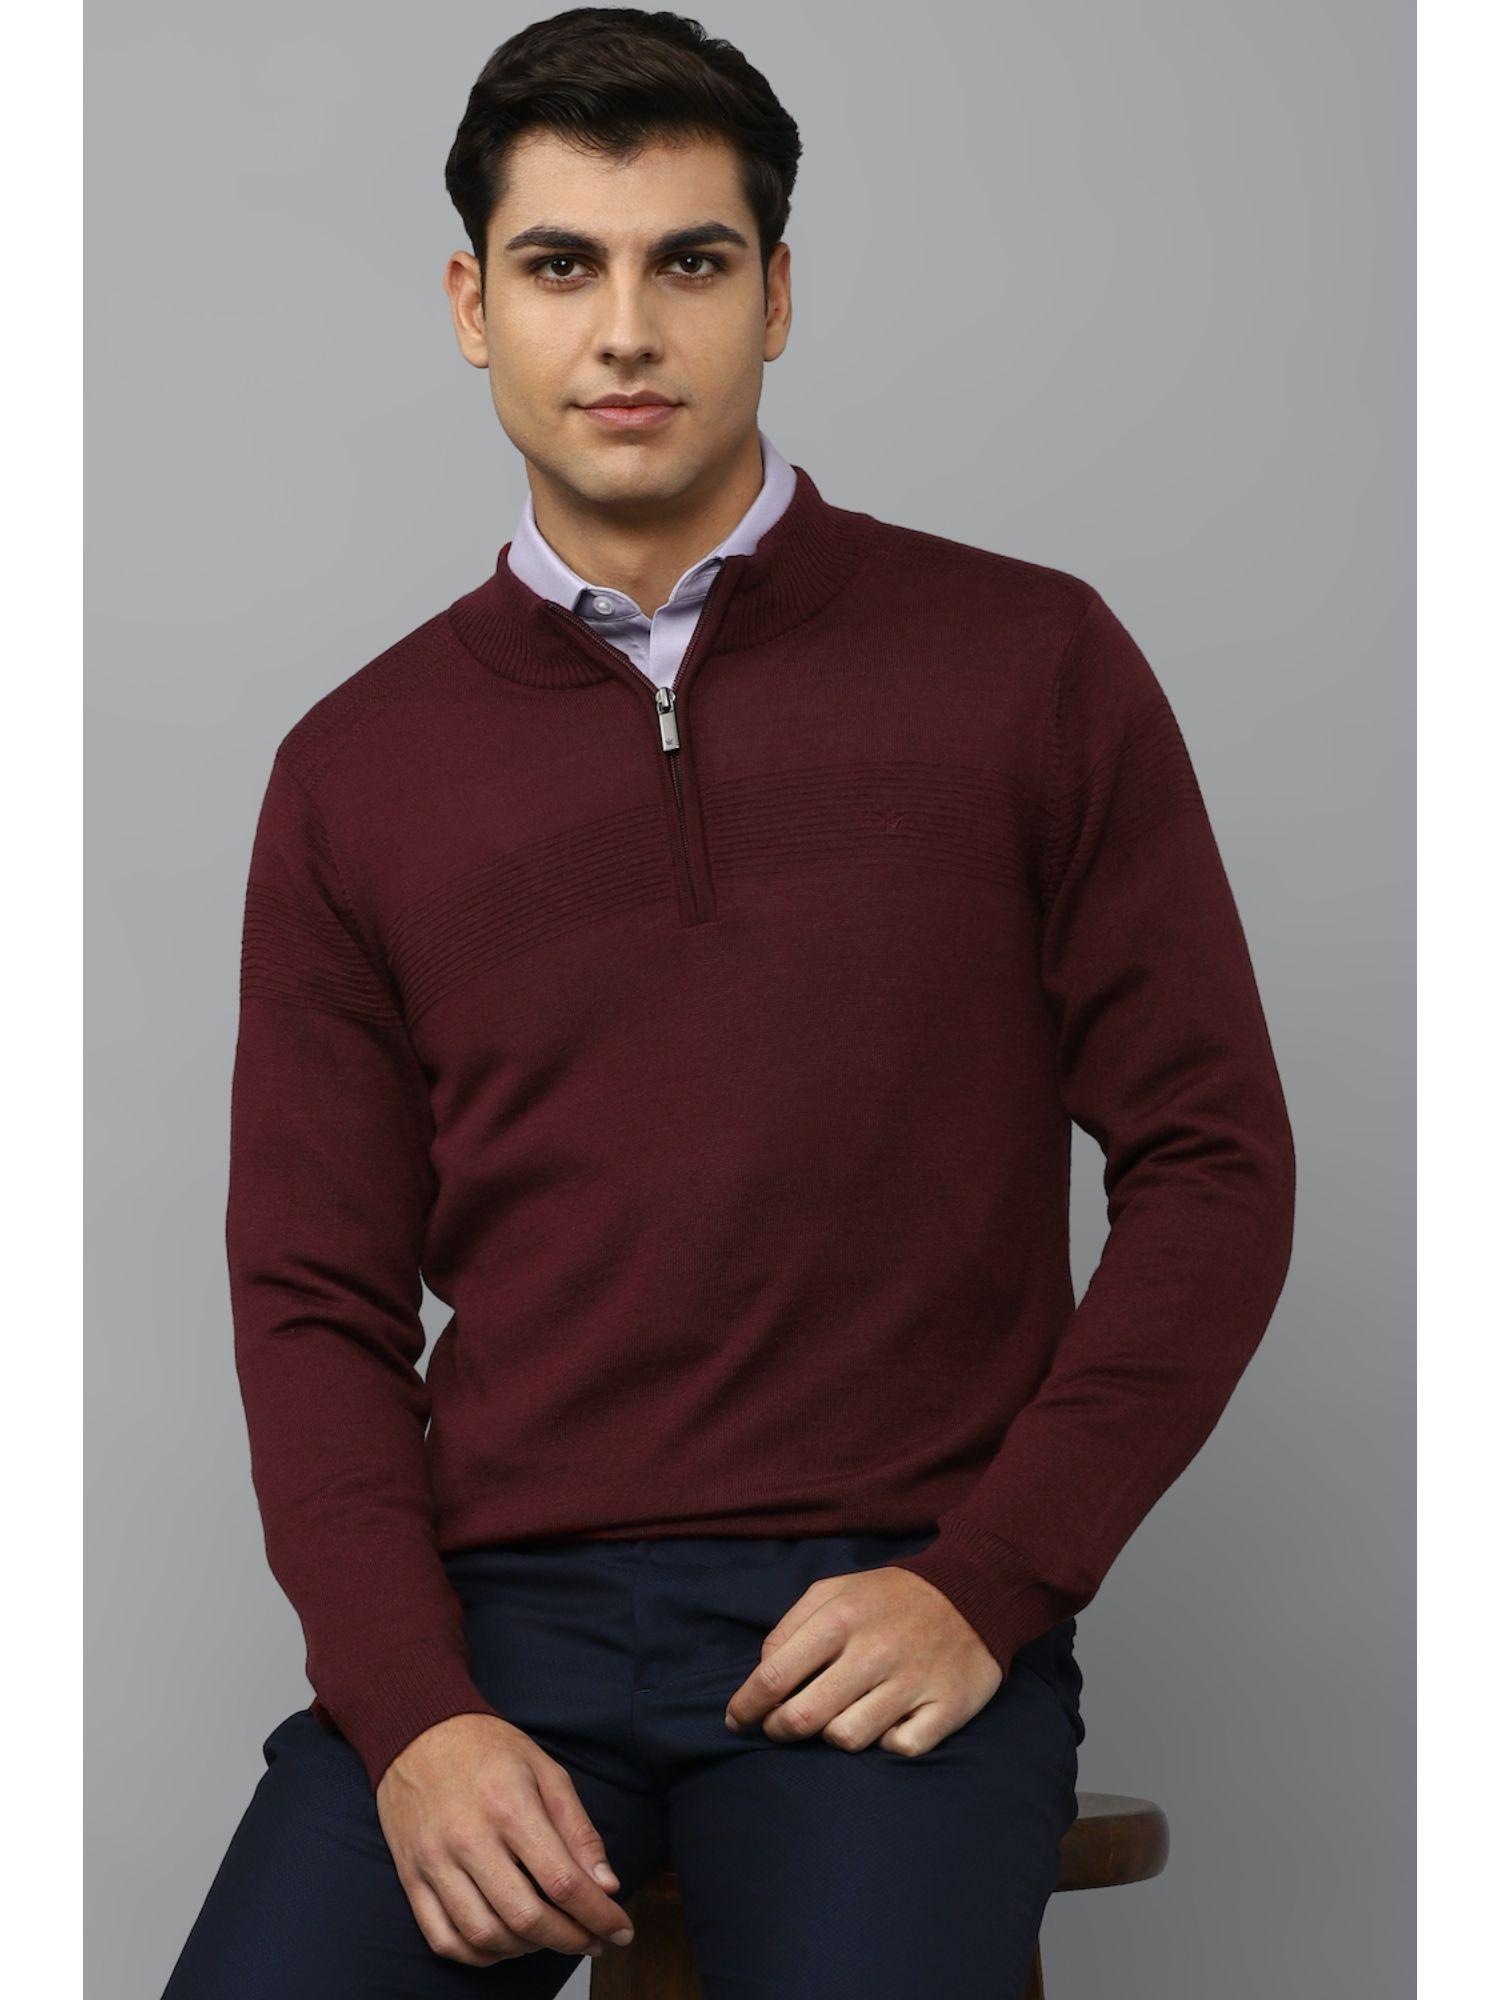 men-stripes-maroon-sweater